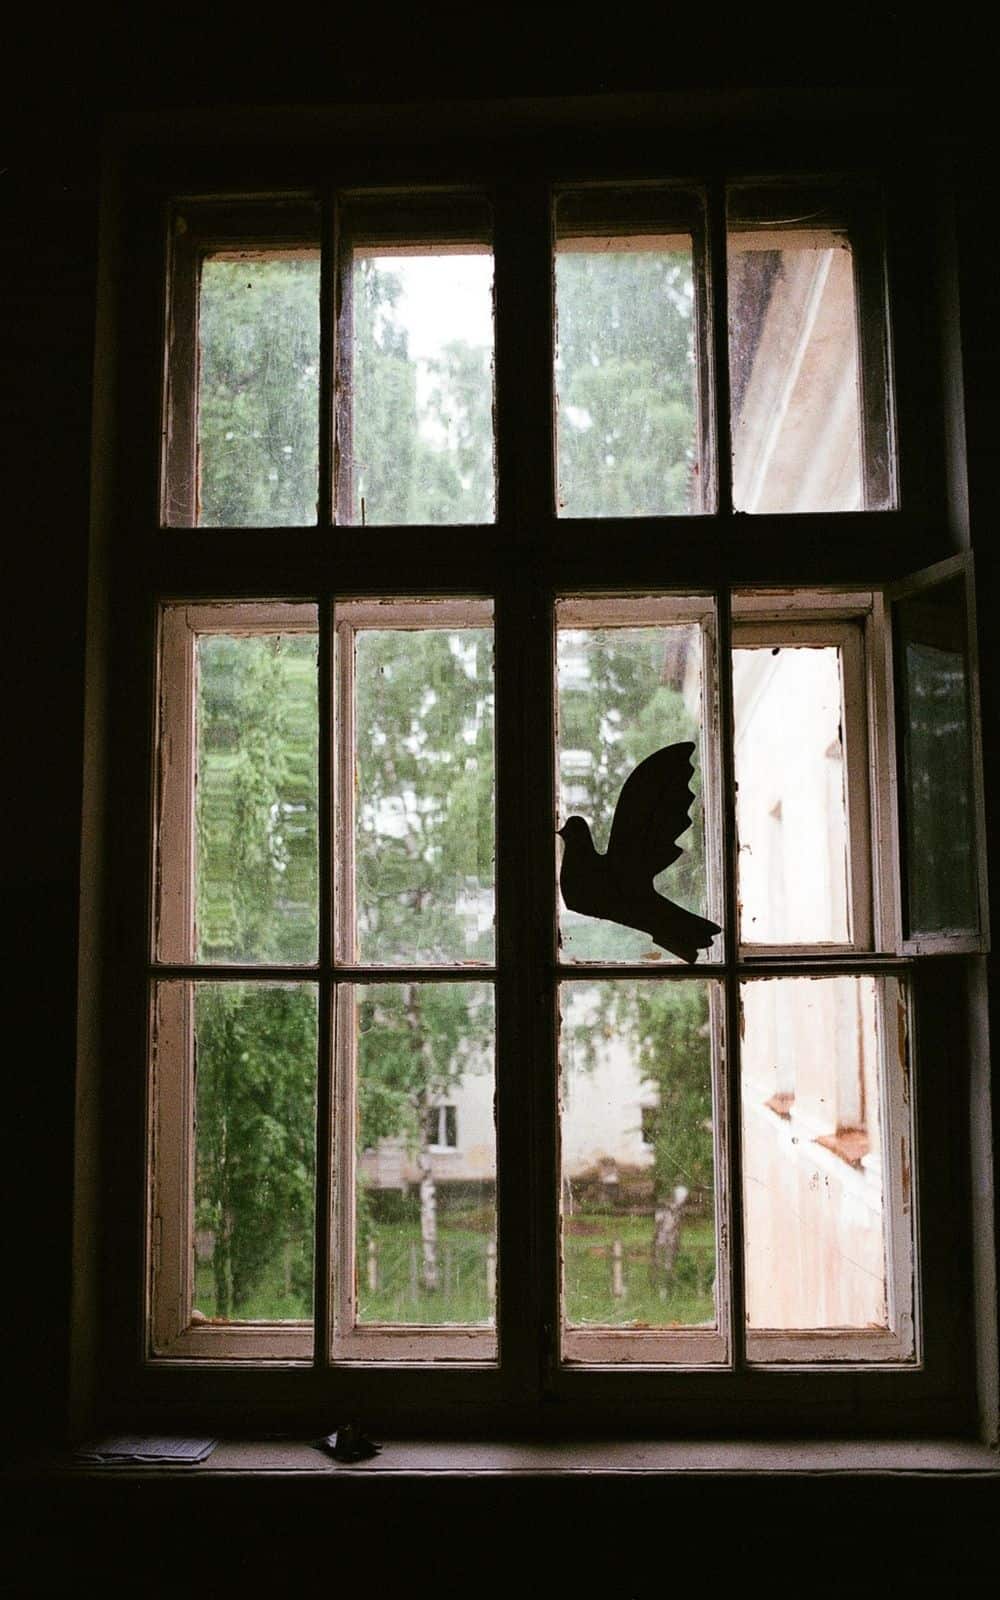  რას ნიშნავს, როცა ჩიტი შენს ფანჯარას ხვდება? (8 სულიერი მნიშვნელობა)